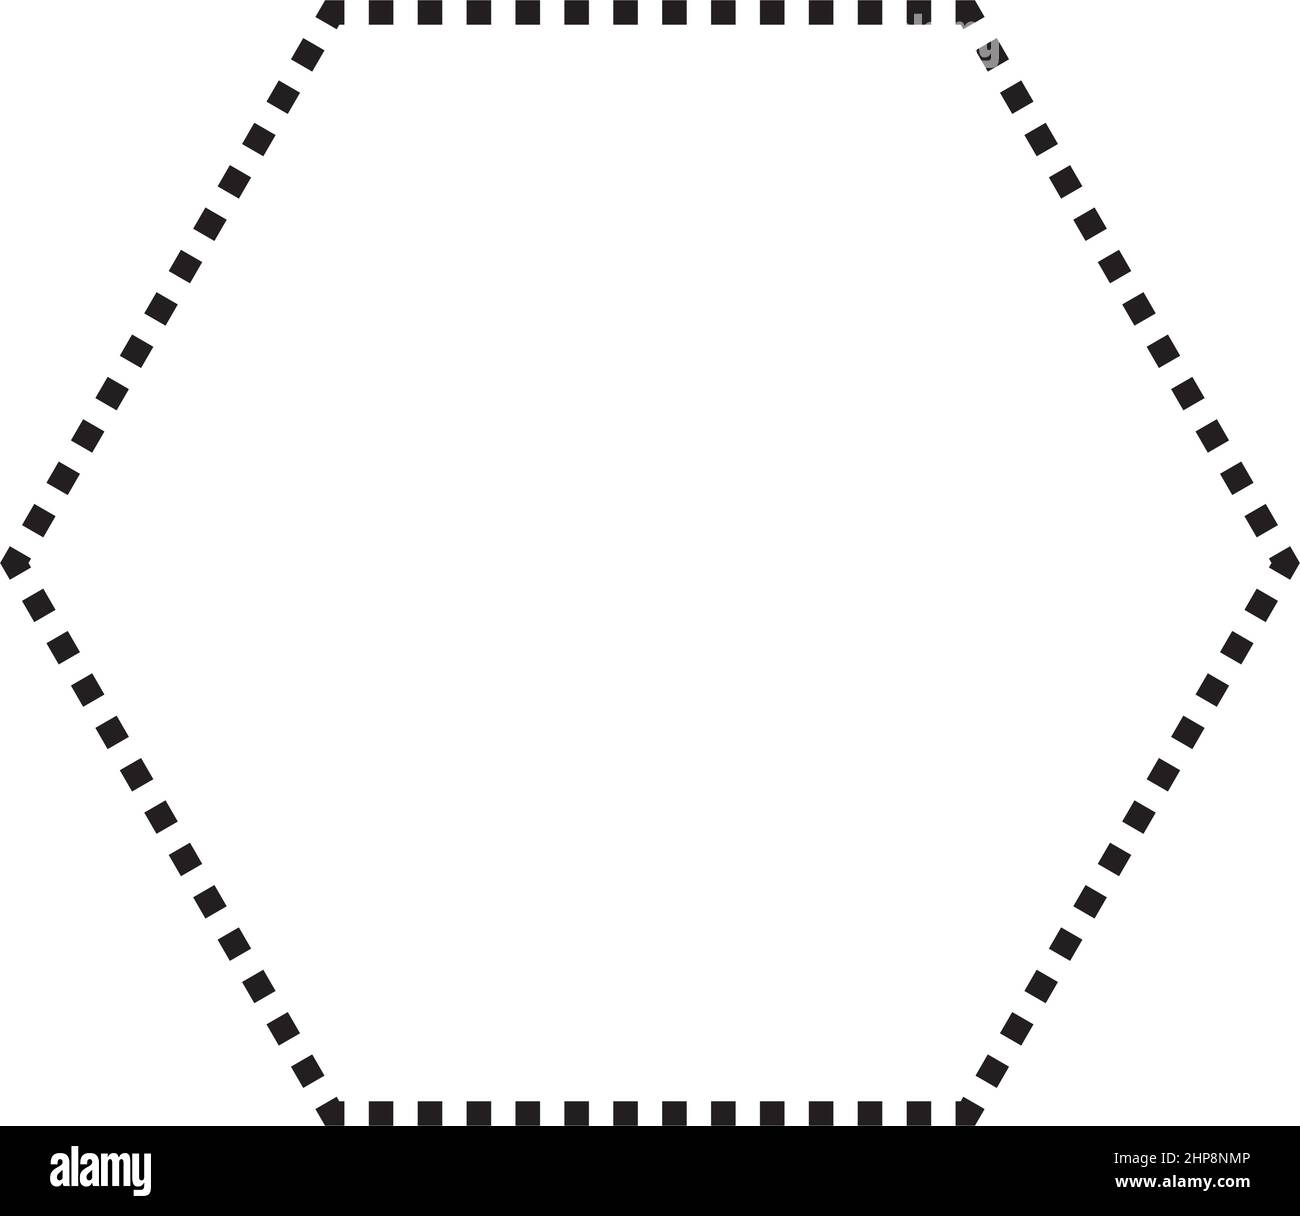 Hexagon-Symbol gestrichelte Form Vektor-Symbol für kreative Grafik-Design-ui-Element in einem Piktogramm Illustration Stock Vektor